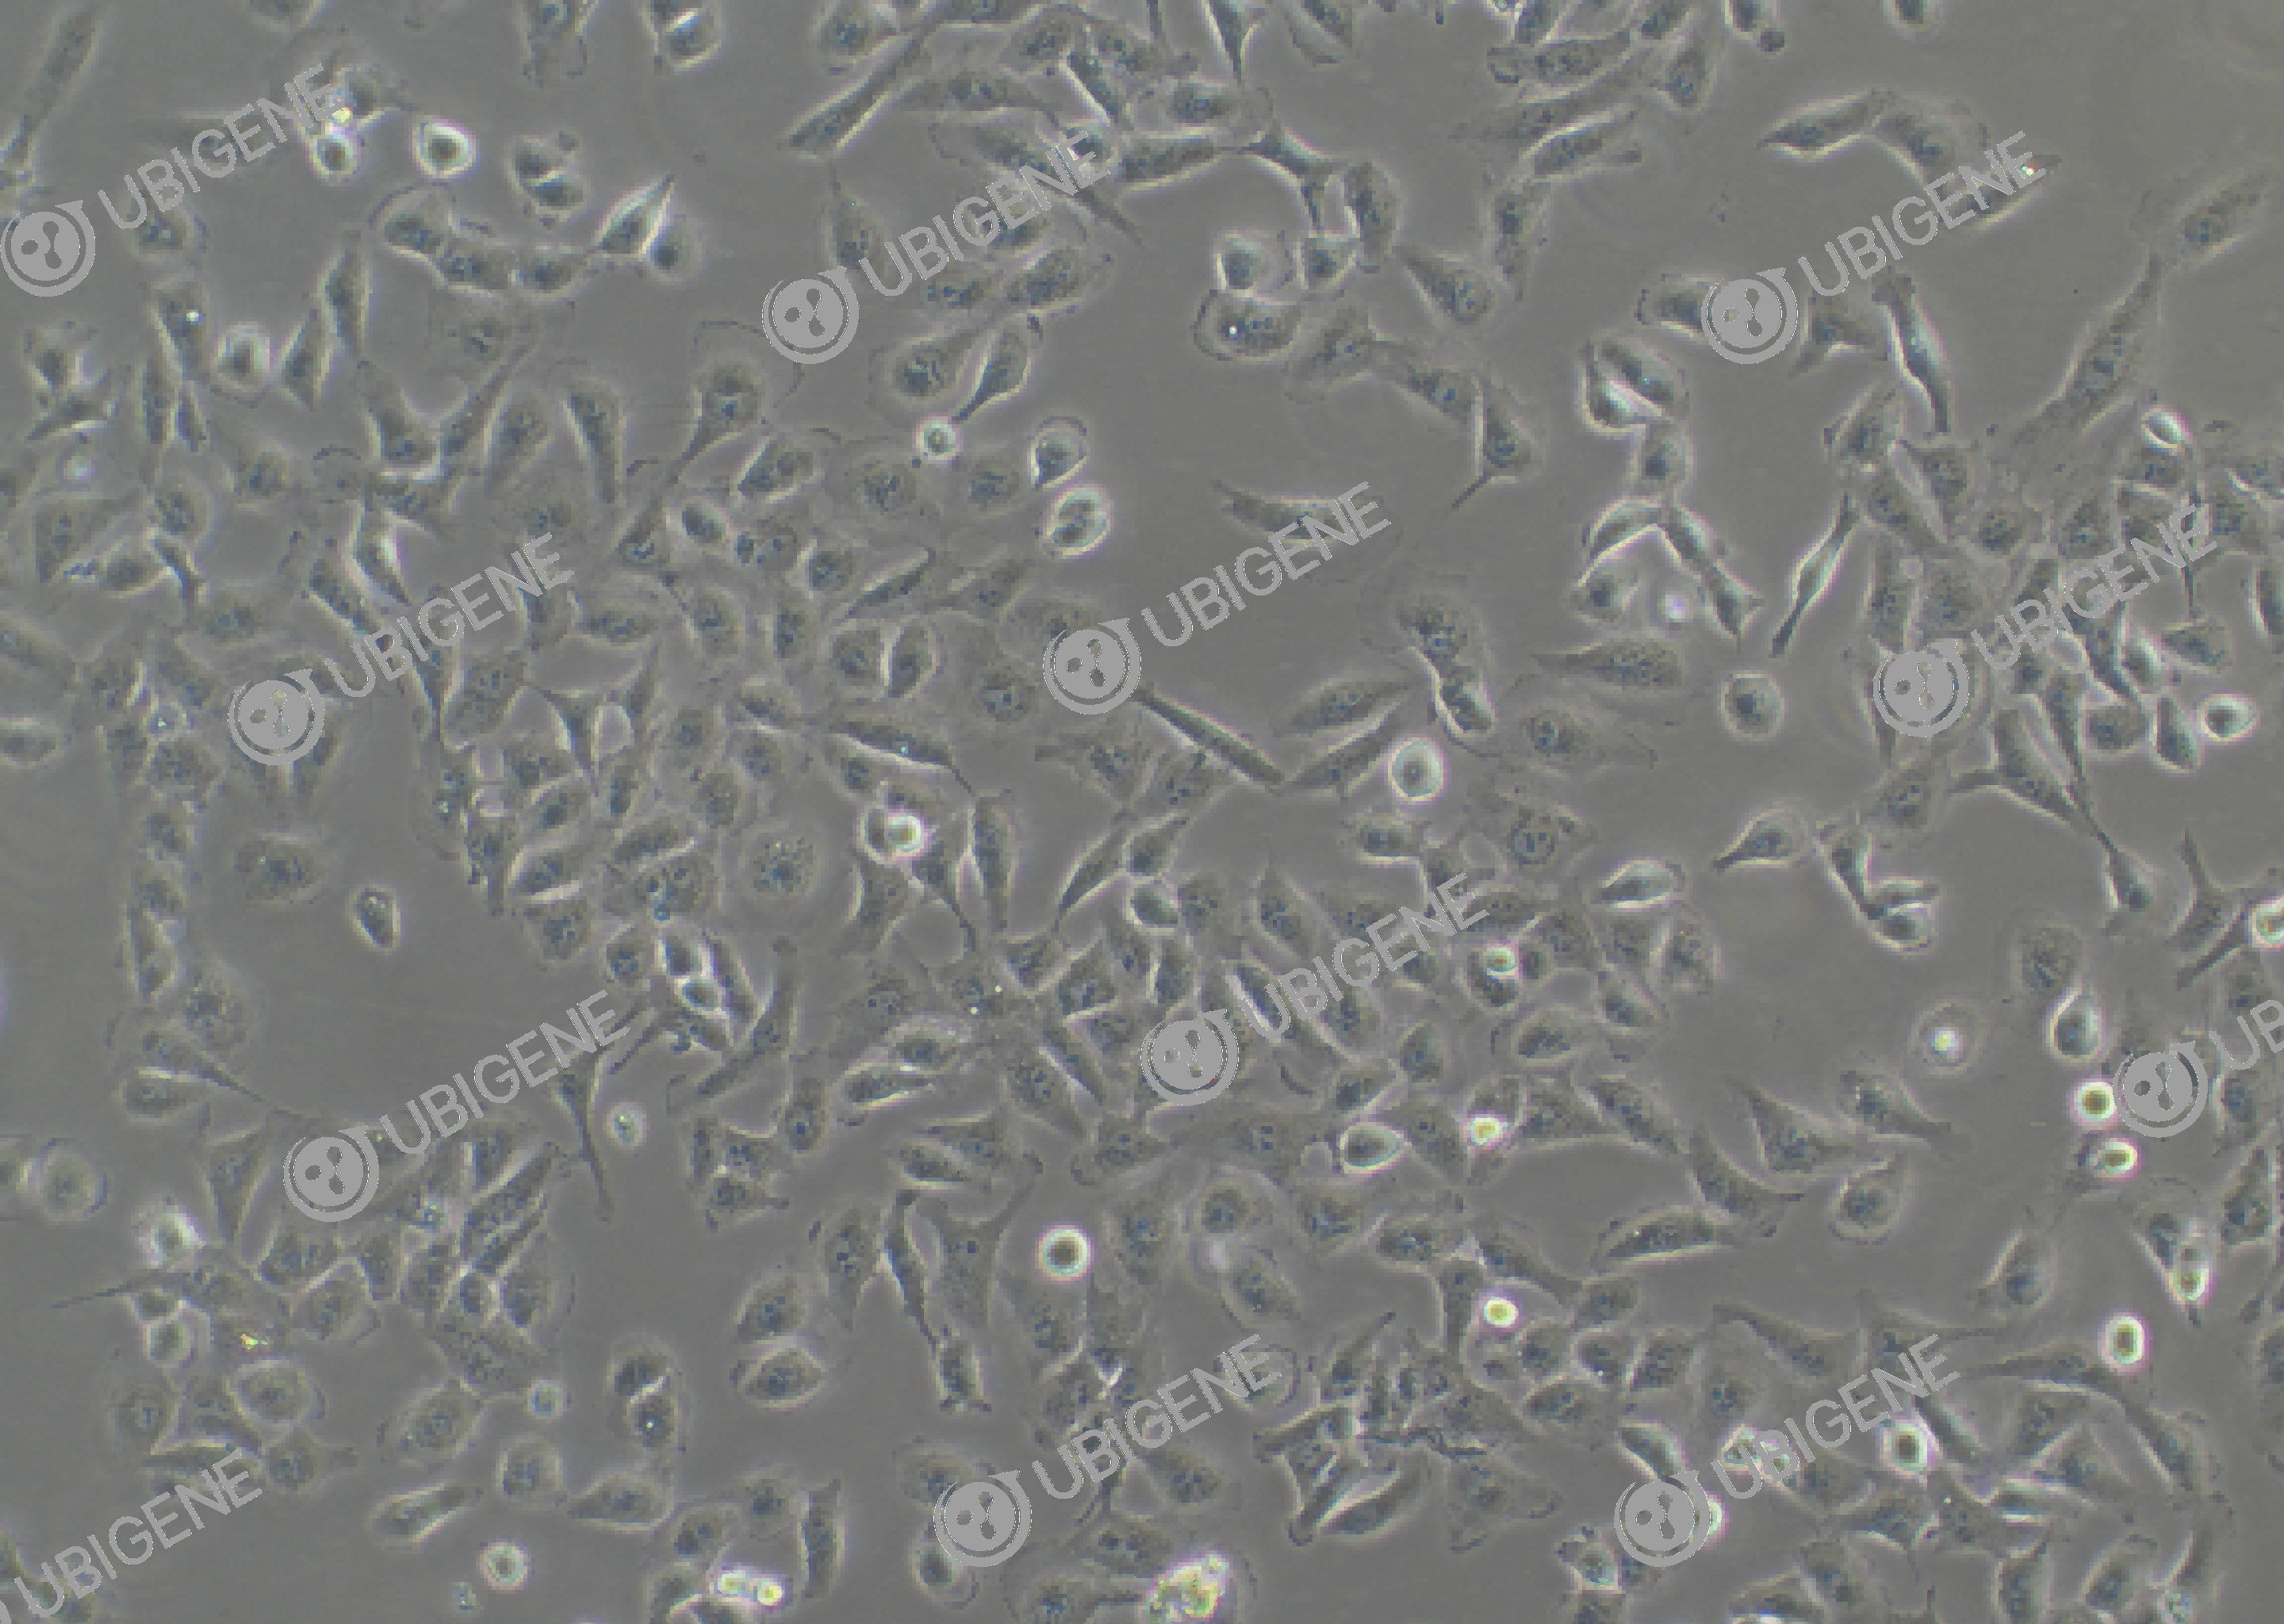 人甲状腺正常细胞(Nthy-ori 3-1)细胞形态培养图